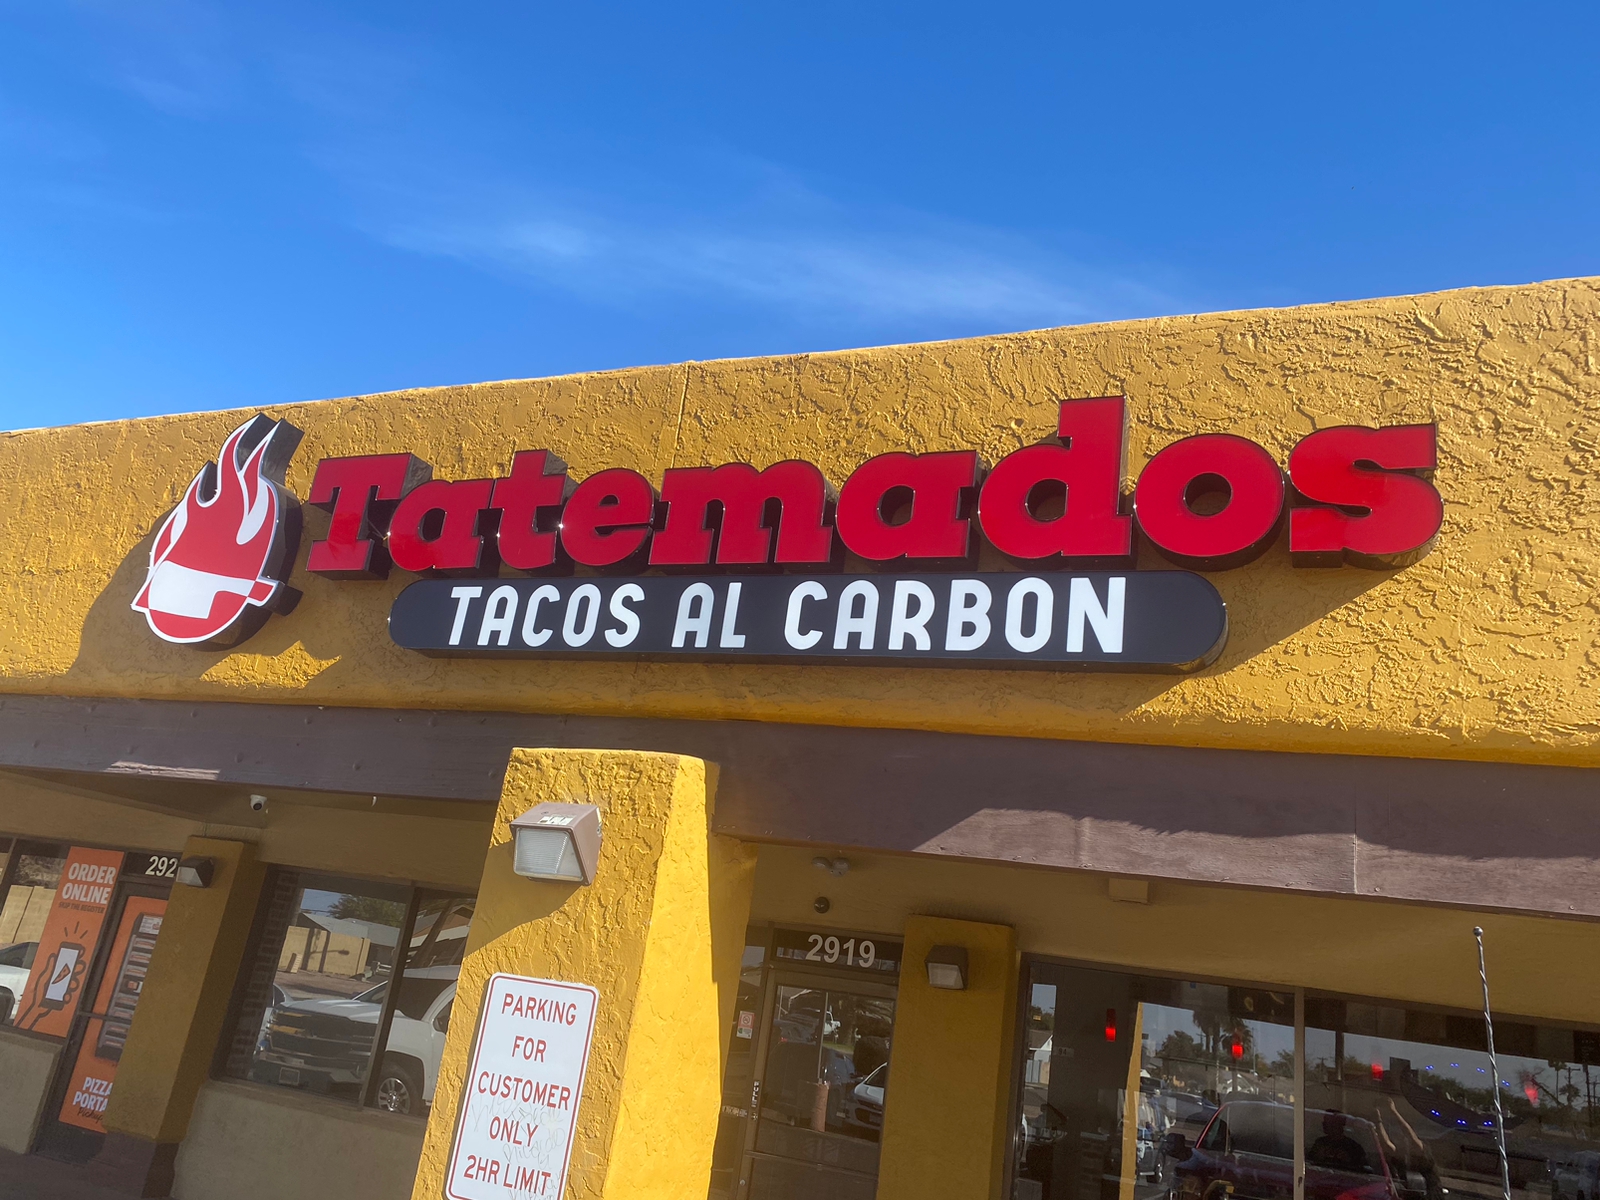 Tatemados Tacos al Carbon